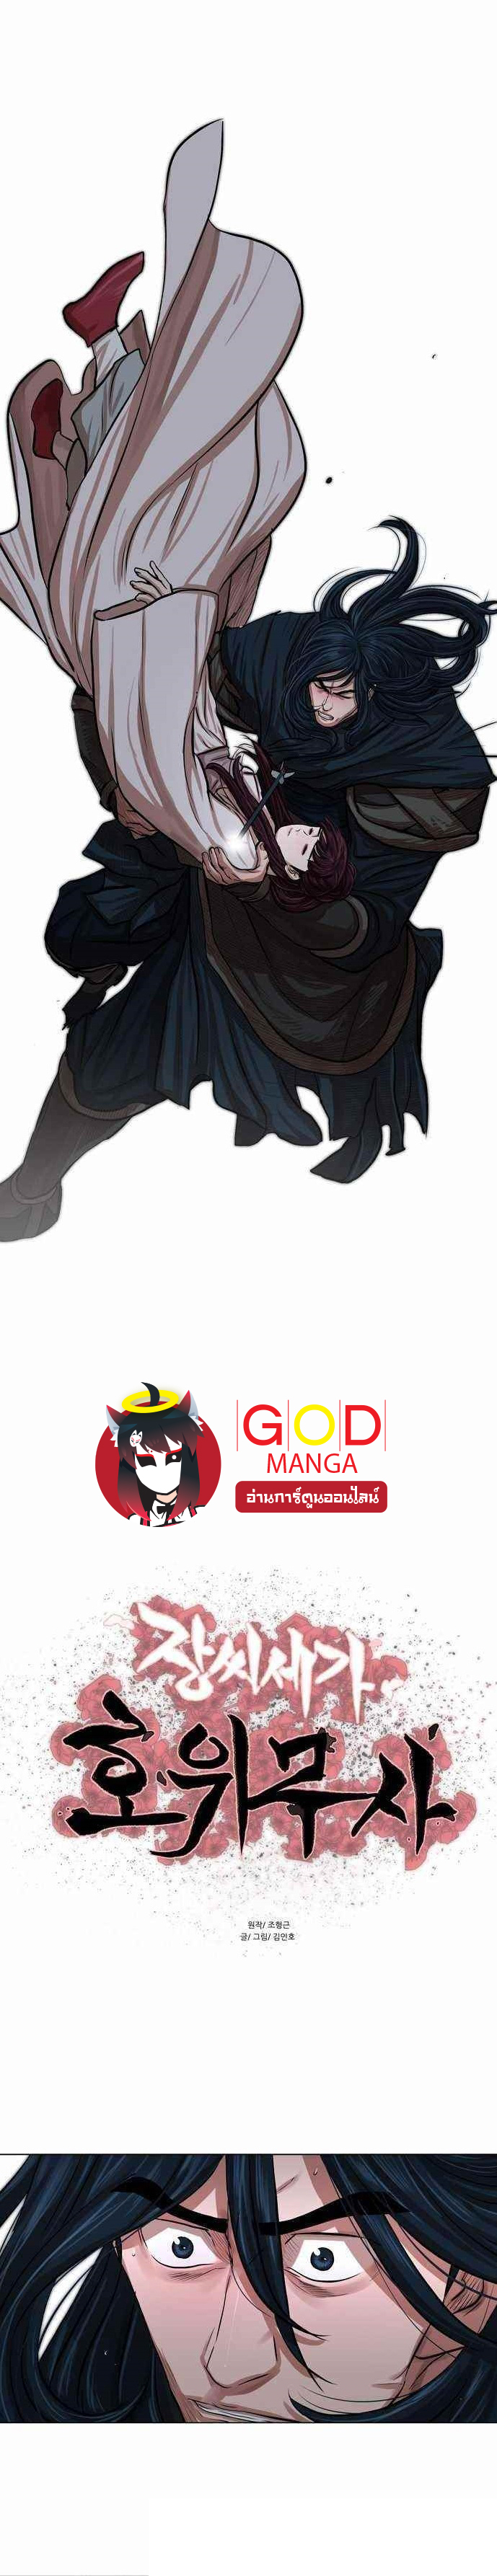 god1